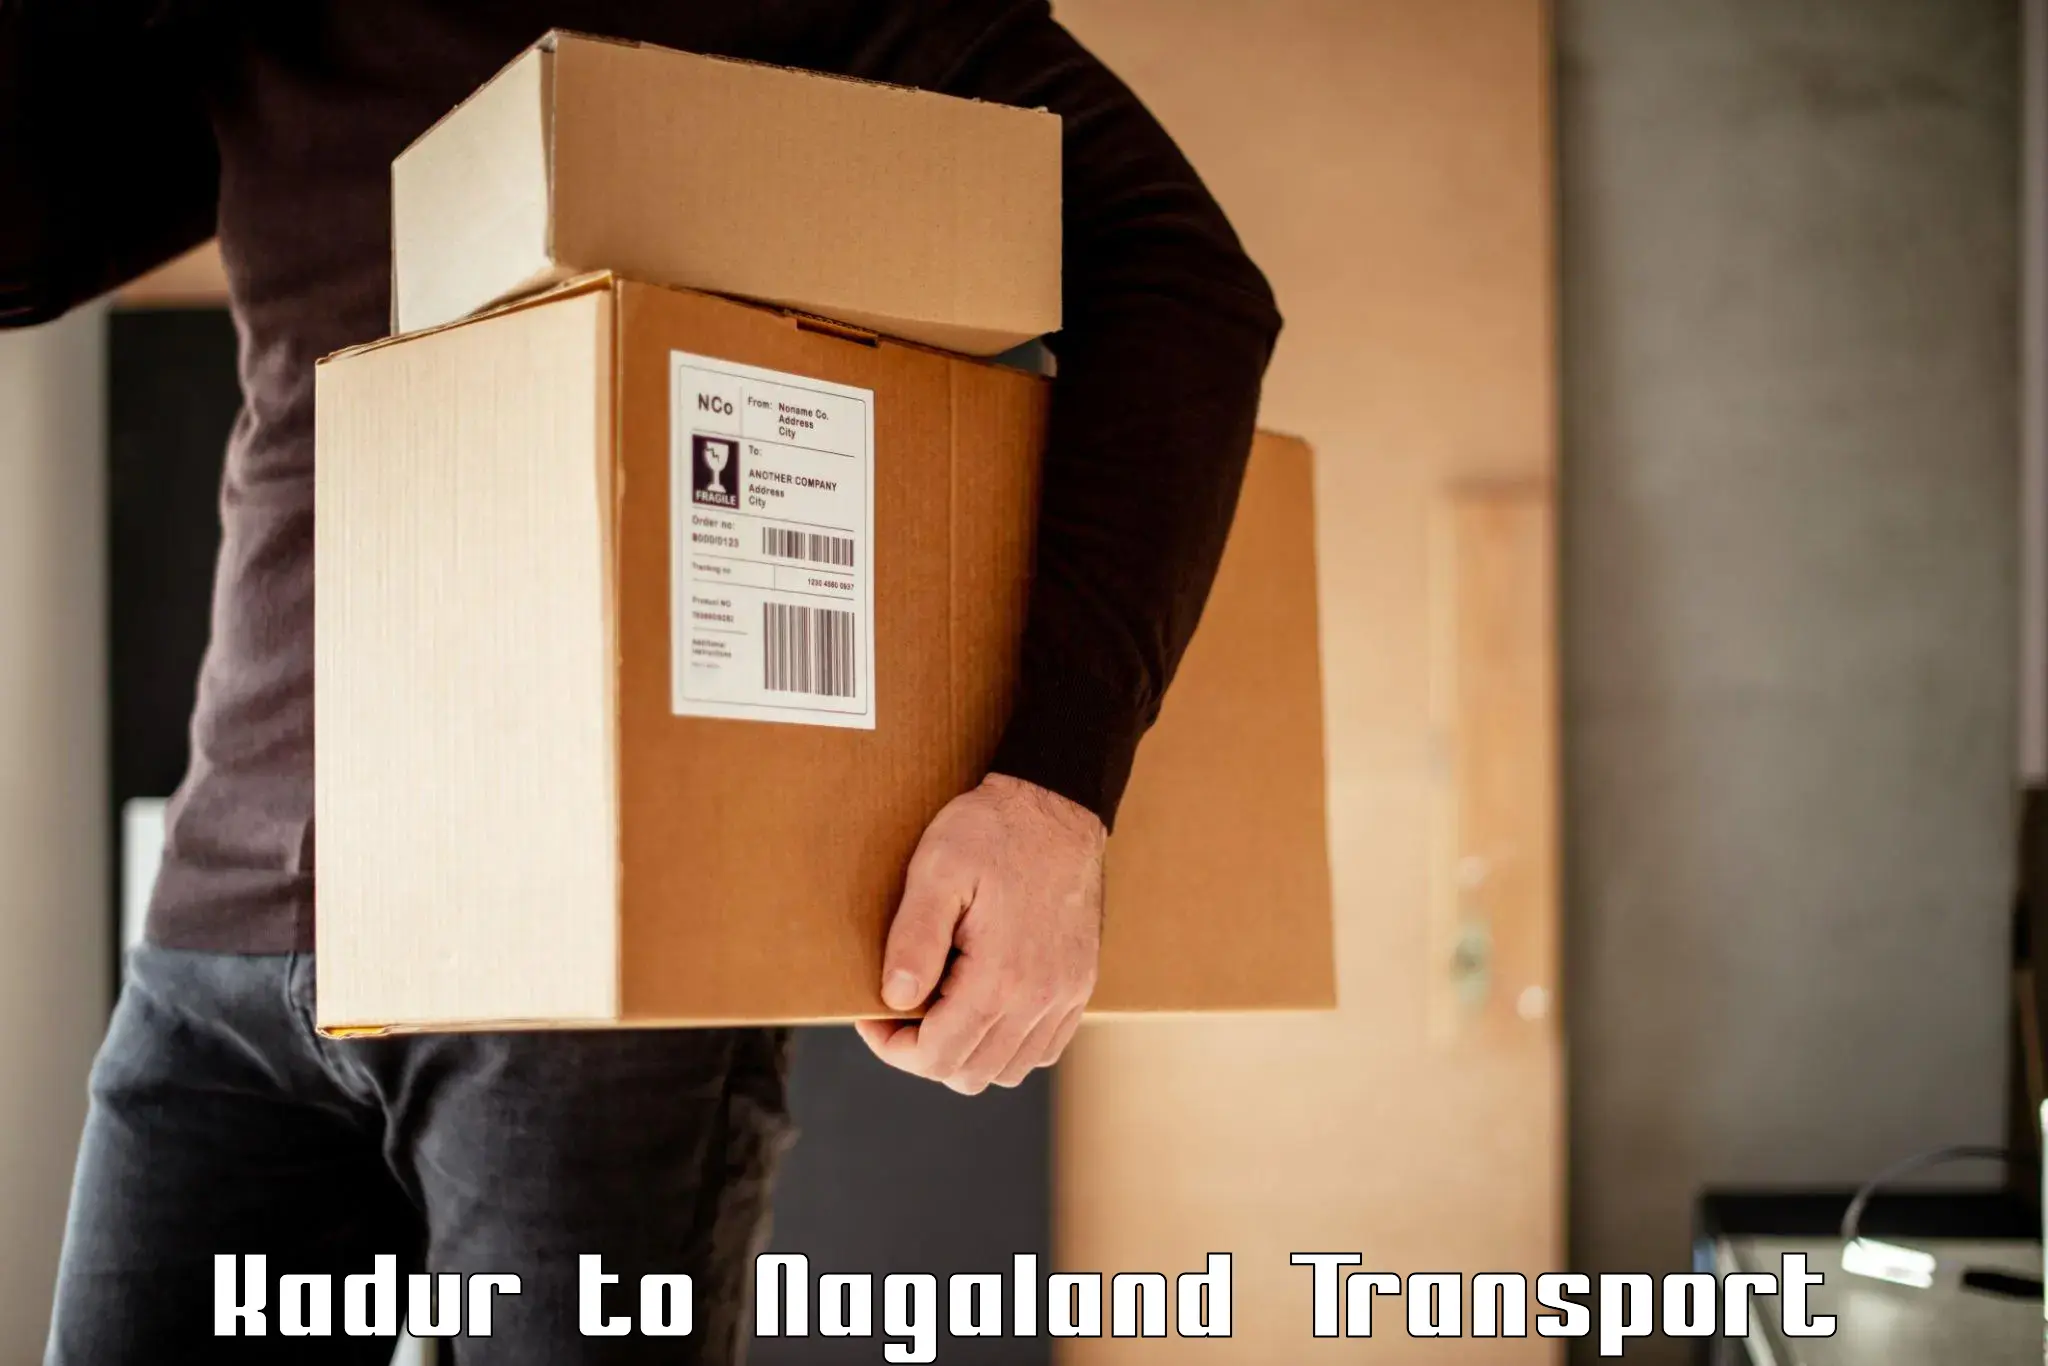 Logistics transportation services Kadur to Nagaland